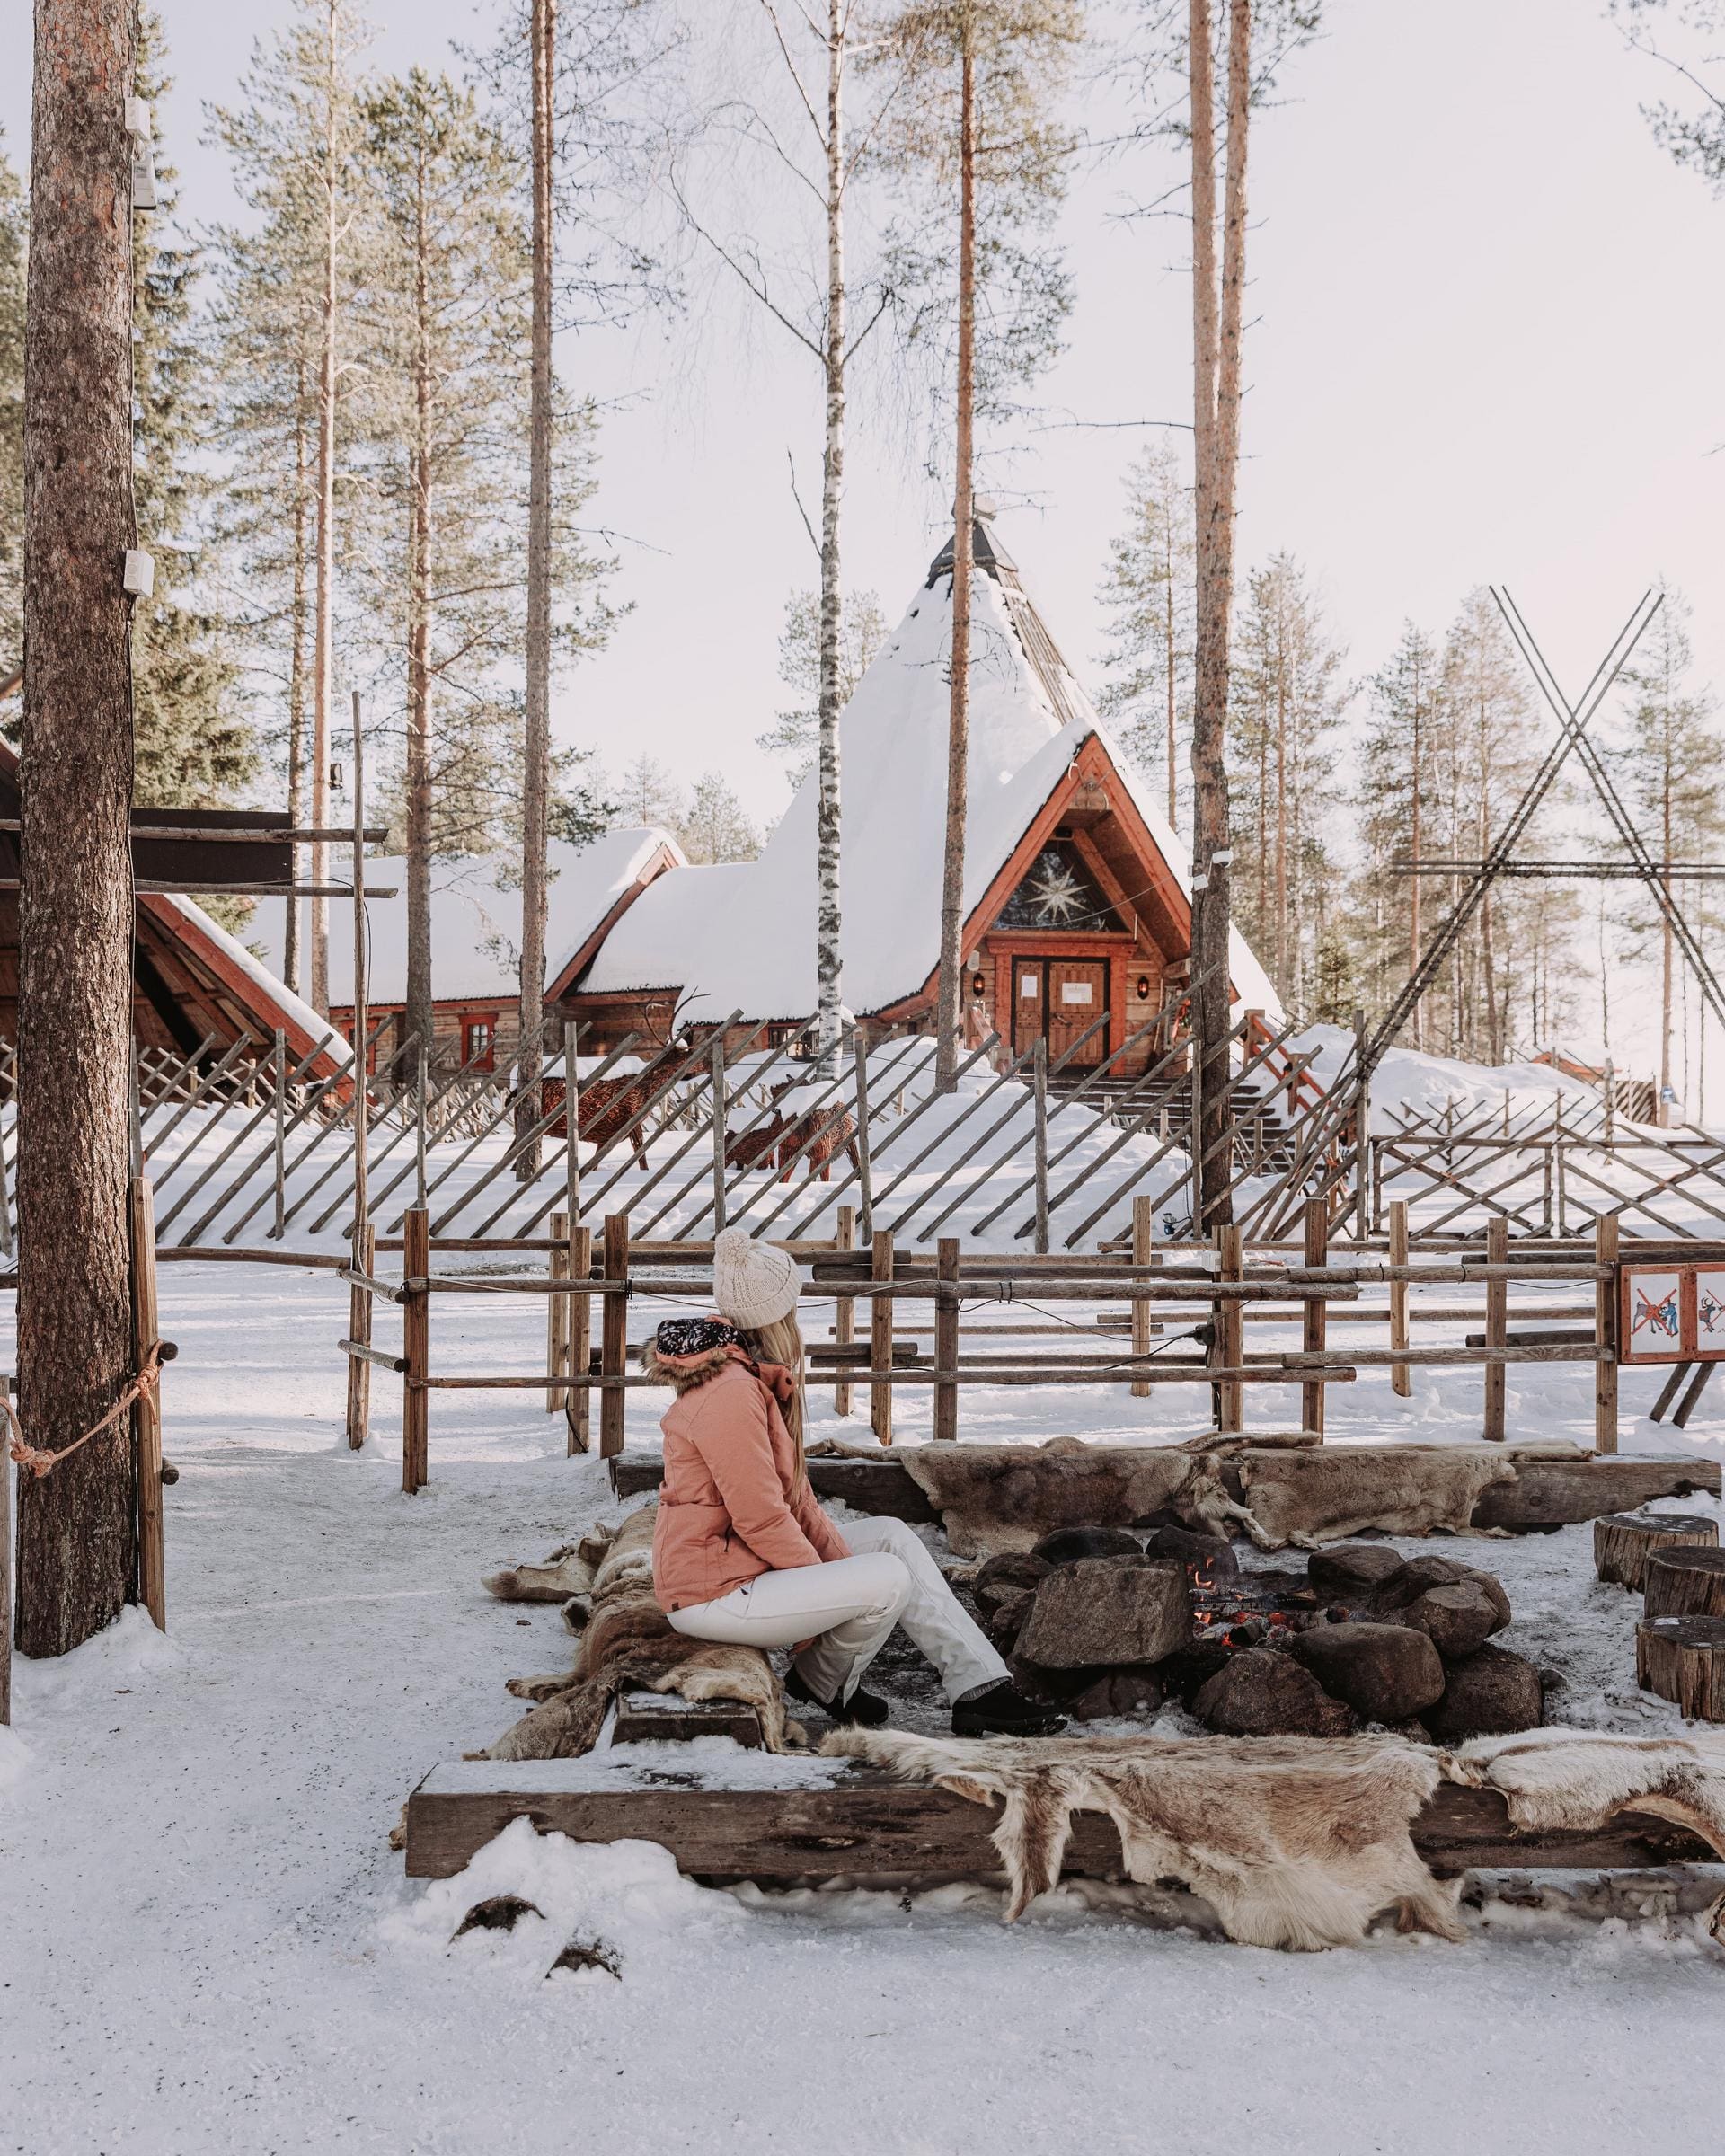 Vakantie Fins Lapland: kiezen tussen Levi, Rovaniemi & Äkäslompolo